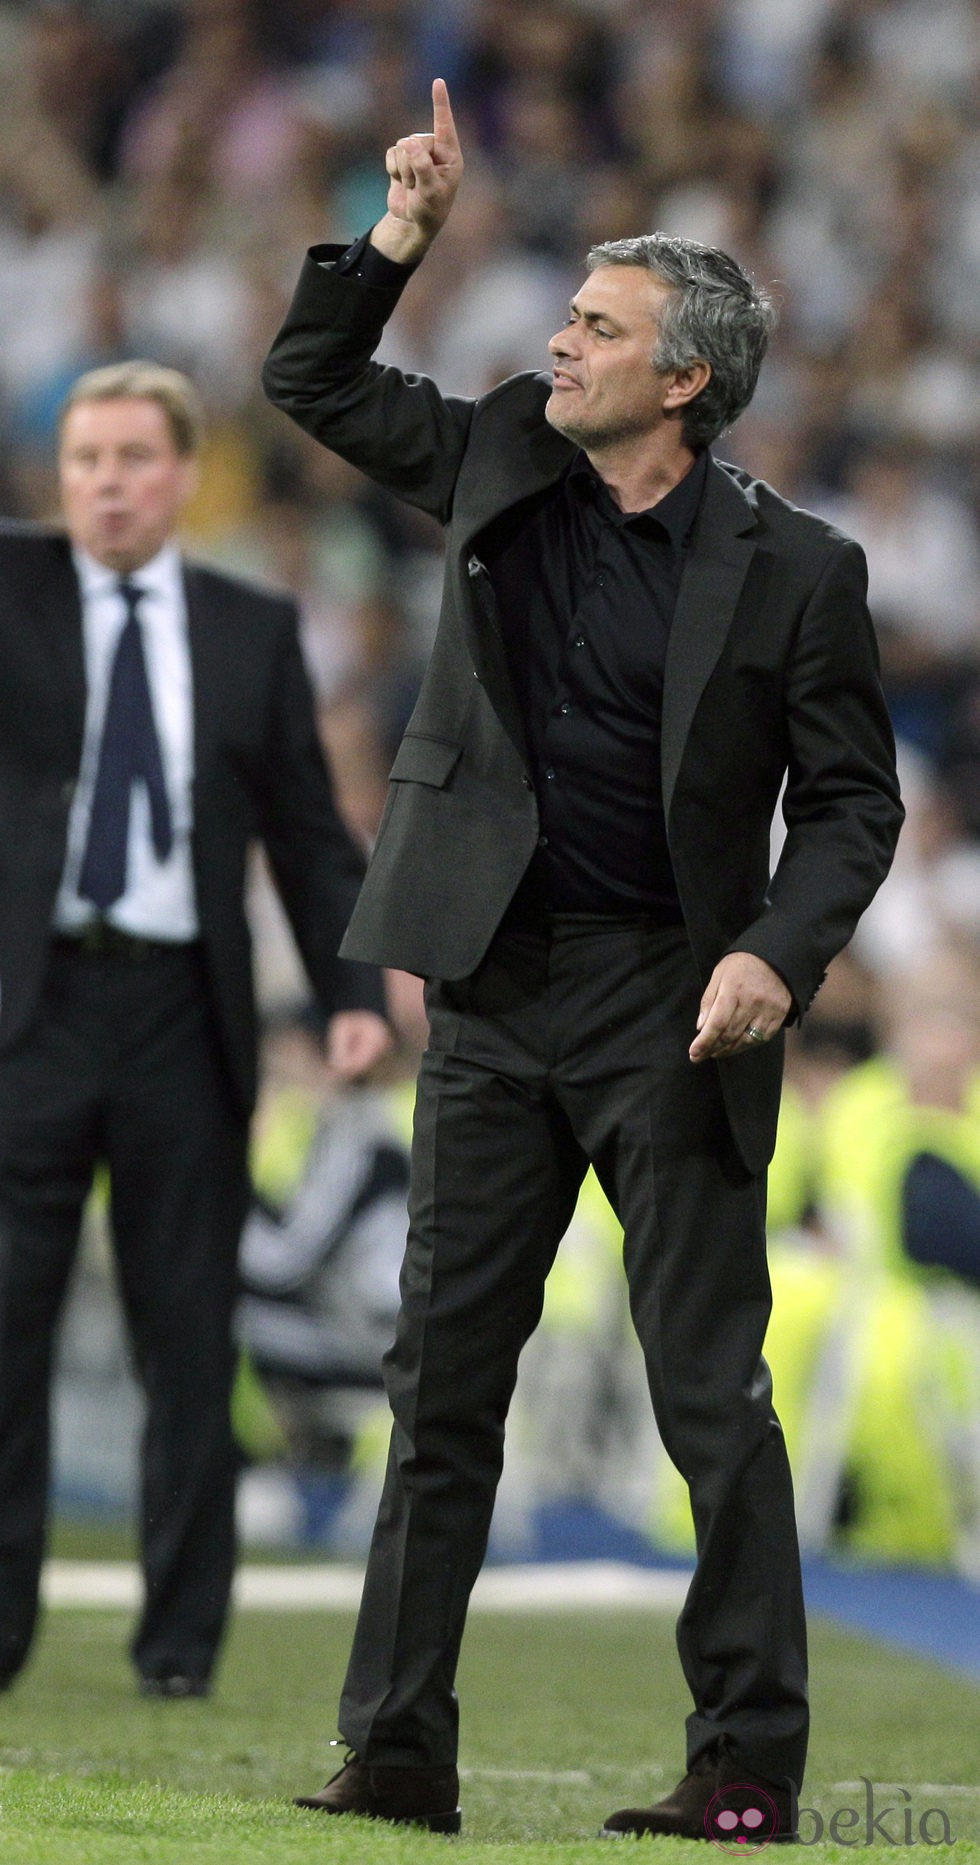 Mourinho con traje durante un partido